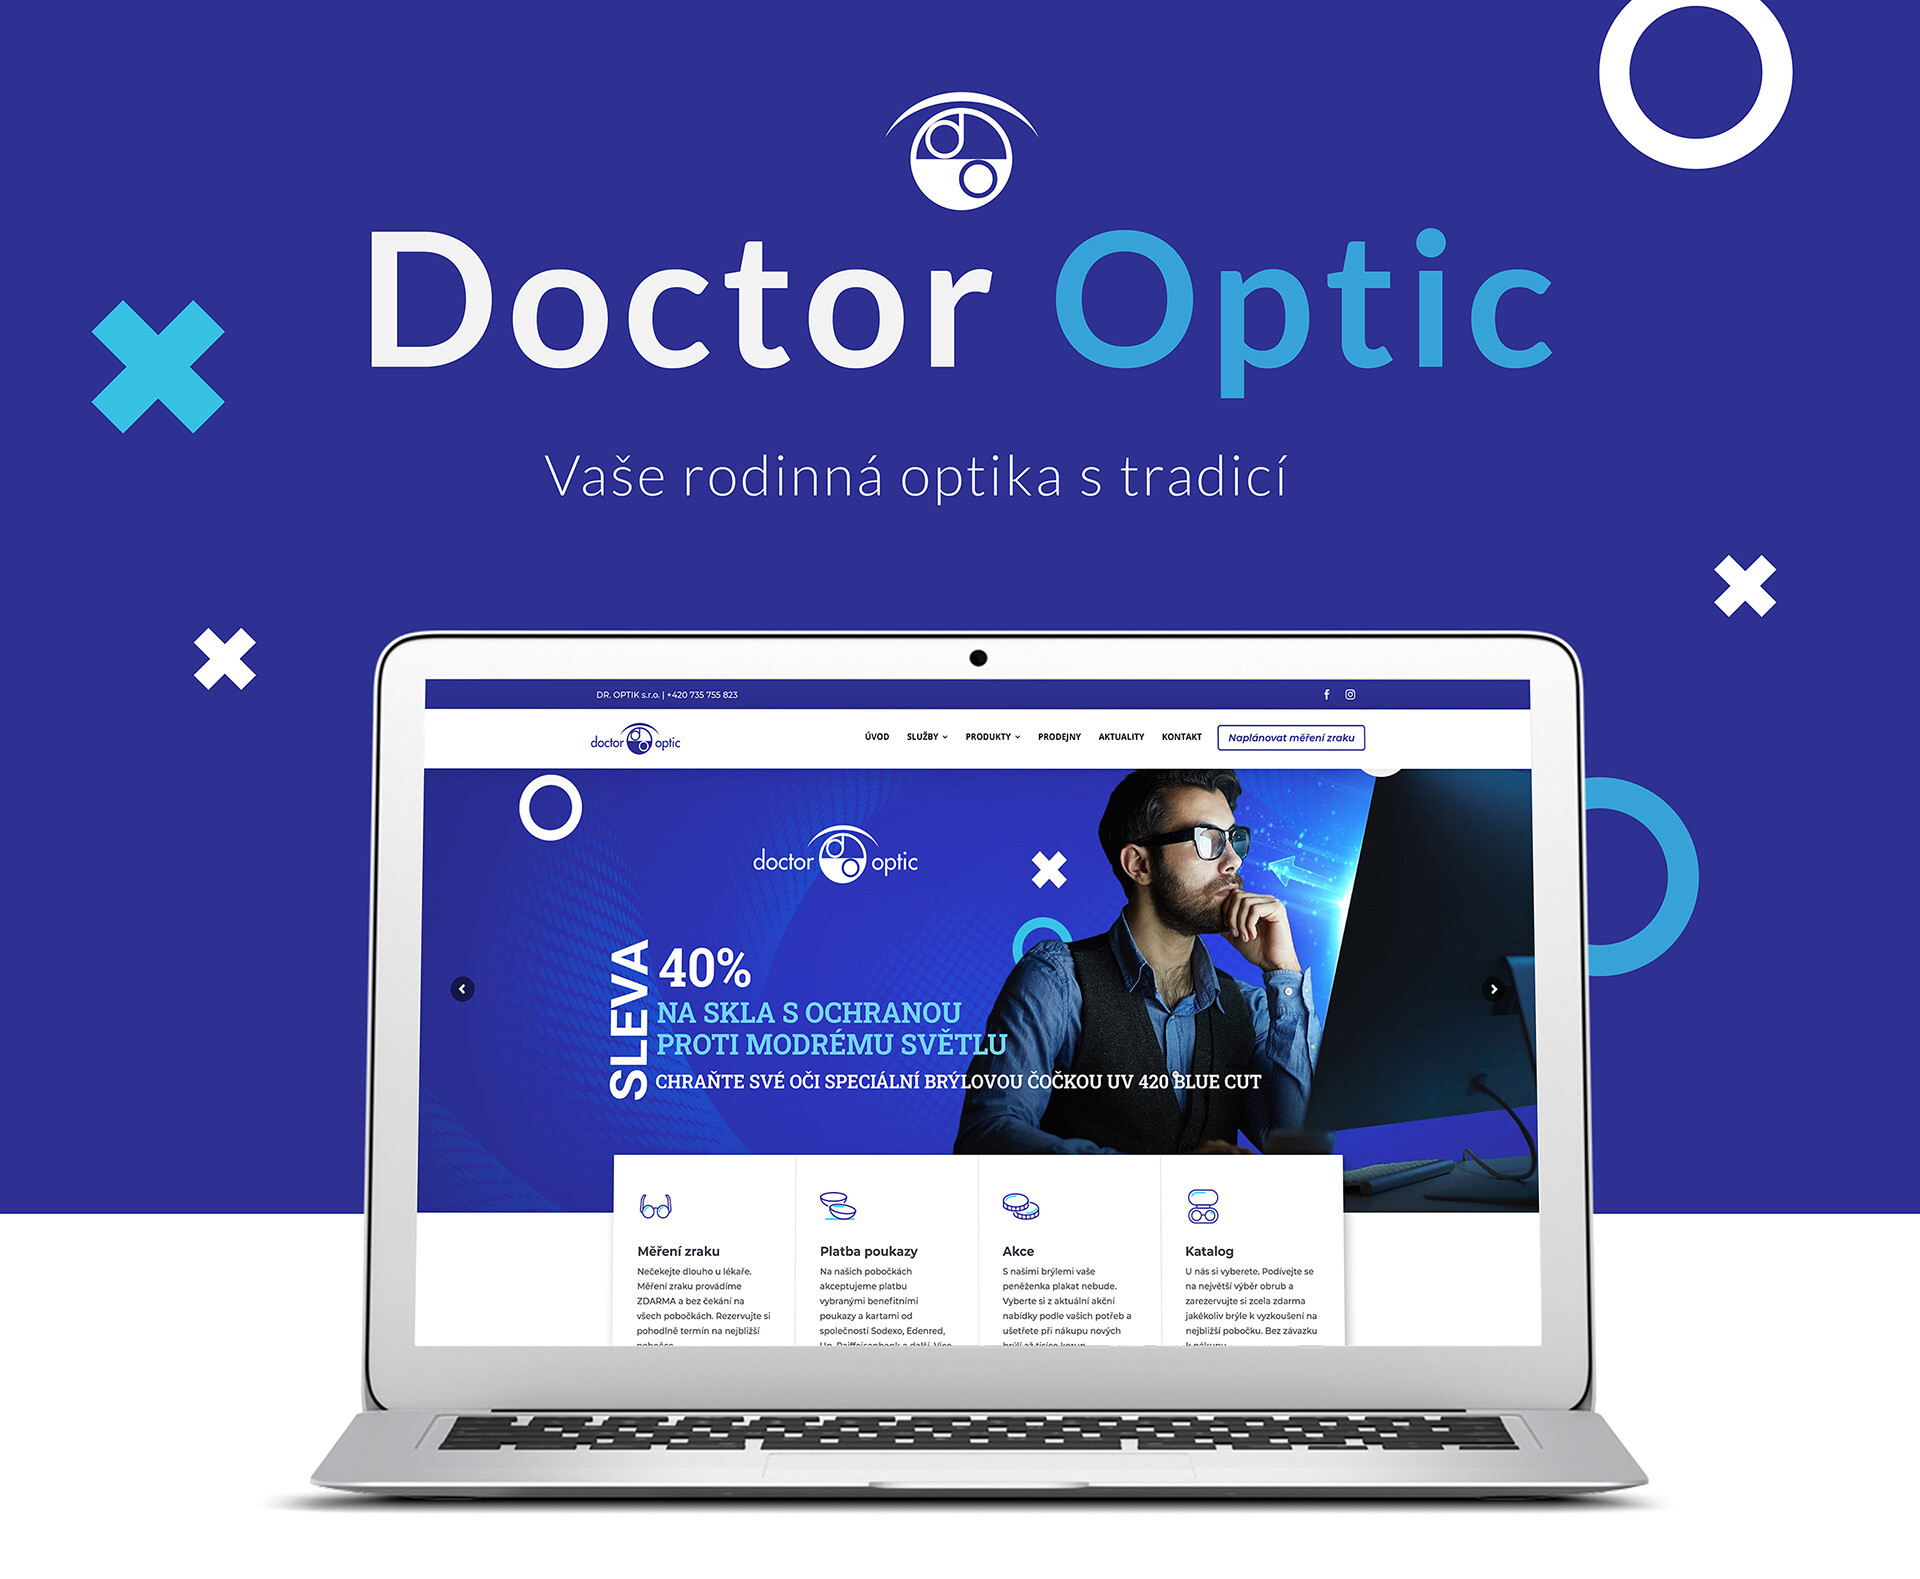 Doctor Optic